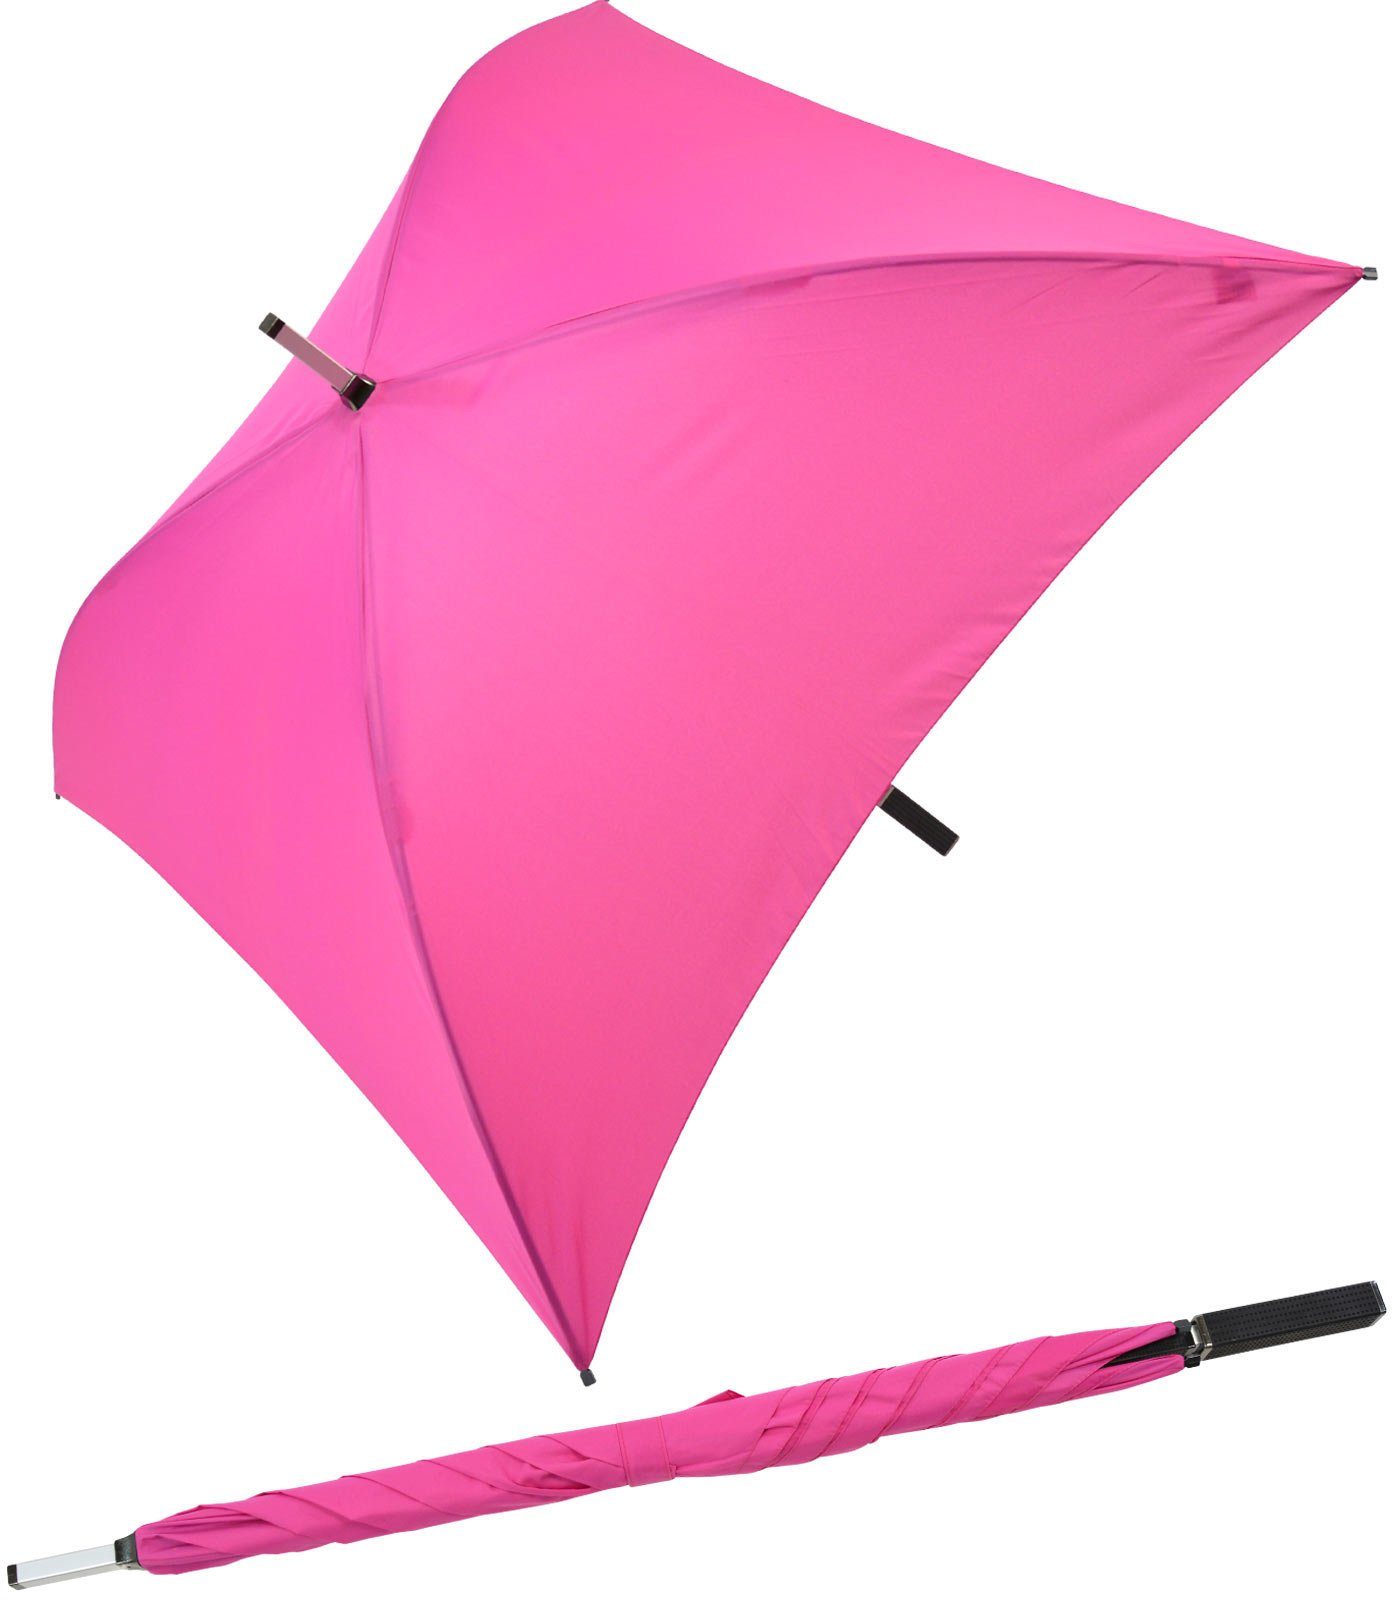 Impliva Langregenschirm All Square® voll quadratischer Regenschirm, der ganz besondere Regenschirm pink | Stockschirme